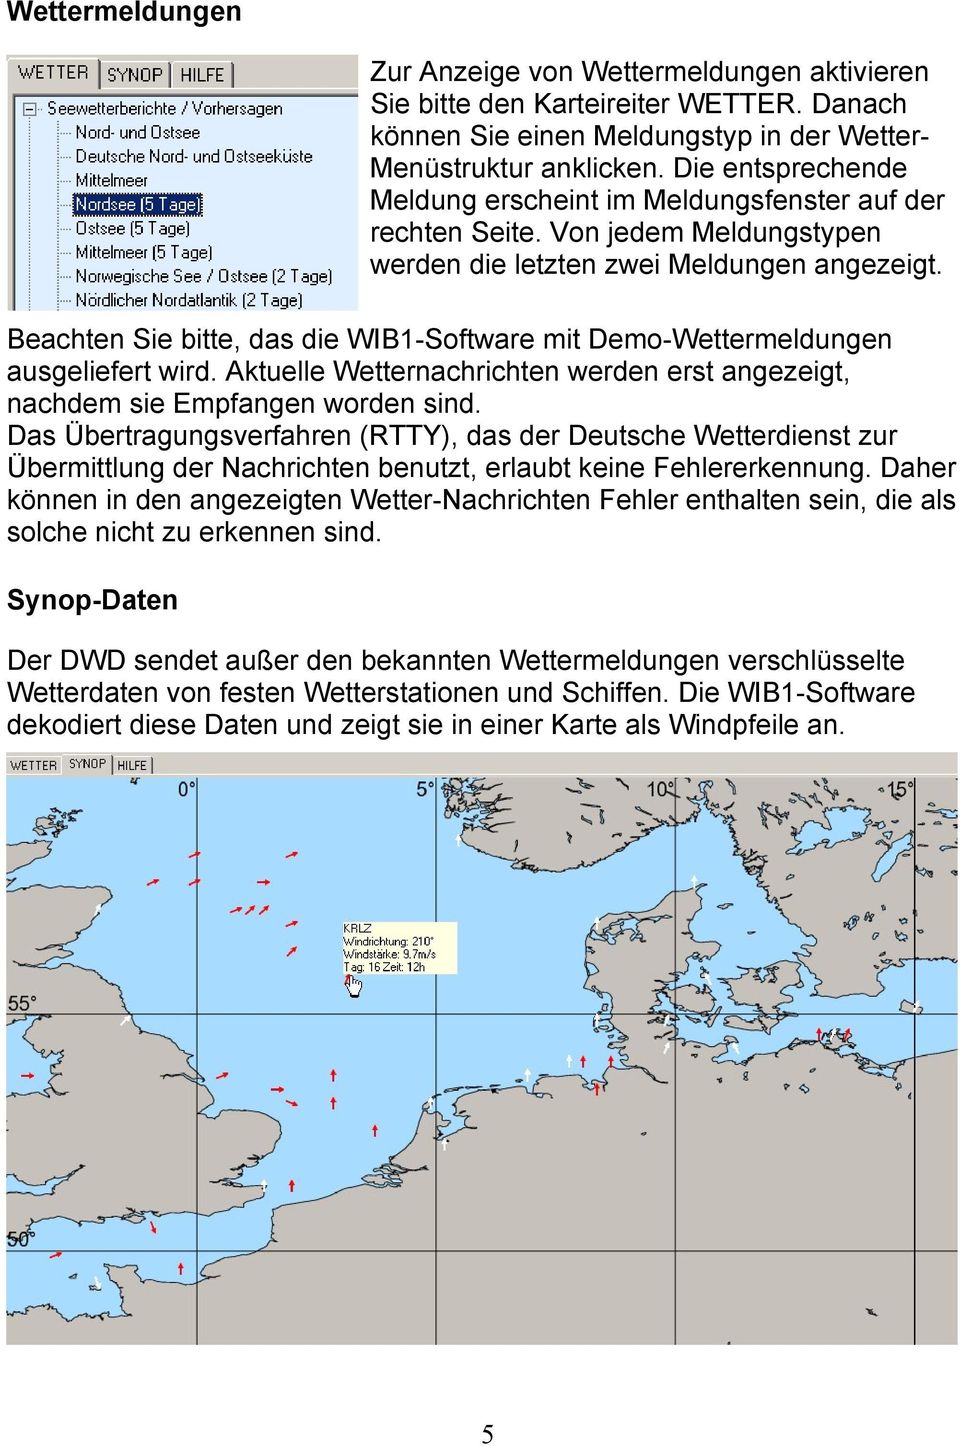 Beachten Sie bitte, das die WIB1-Software mit Demo-Wettermeldungen ausgeliefert wird. Aktuelle Wetternachrichten werden erst angezeigt, nachdem sie Empfangen worden sind.